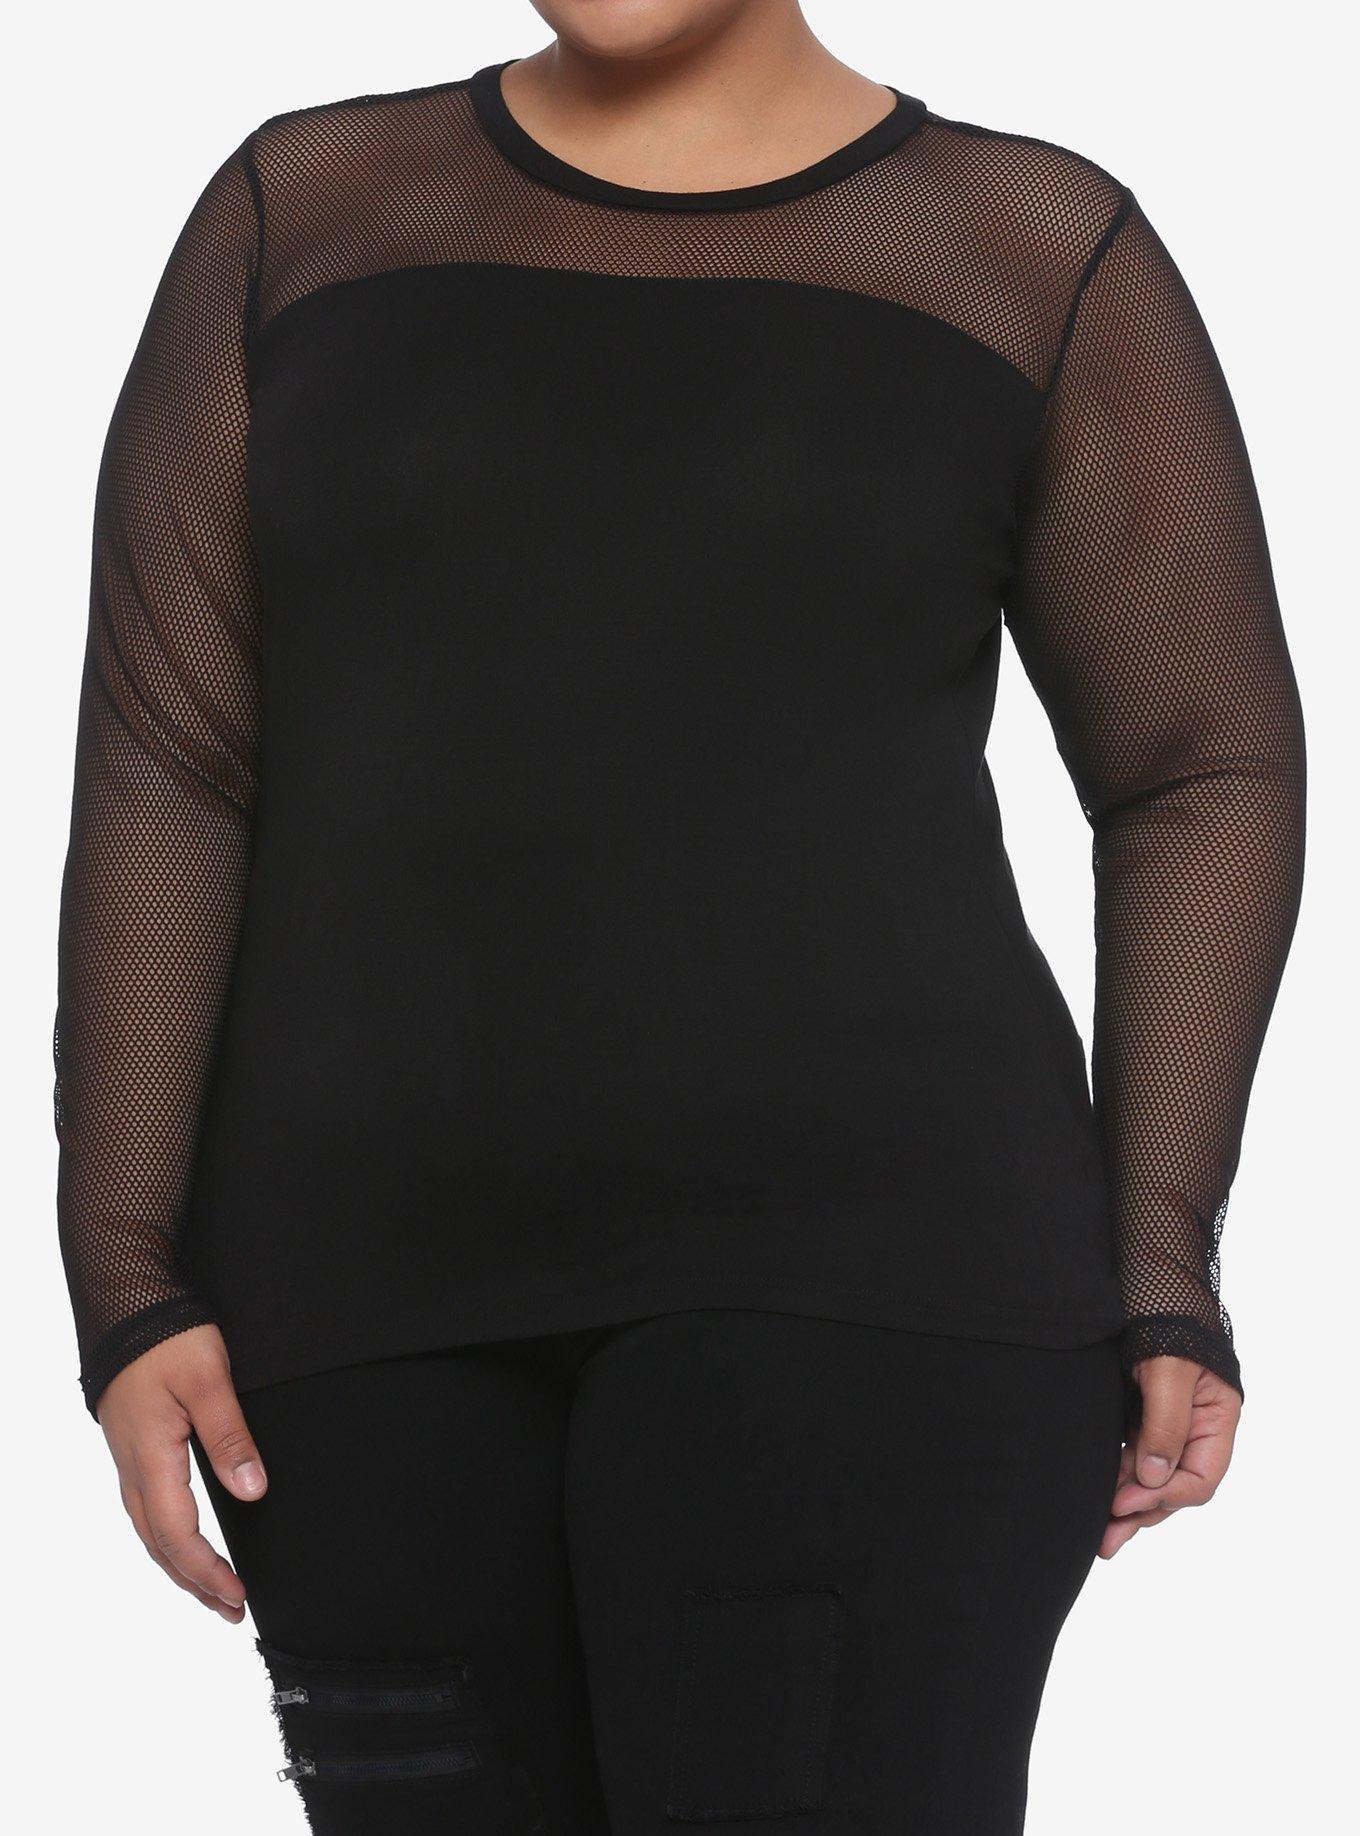 Black Mesh & Panels Long-Sleeve T-Shirt Plus Size, BLACK, hi-res